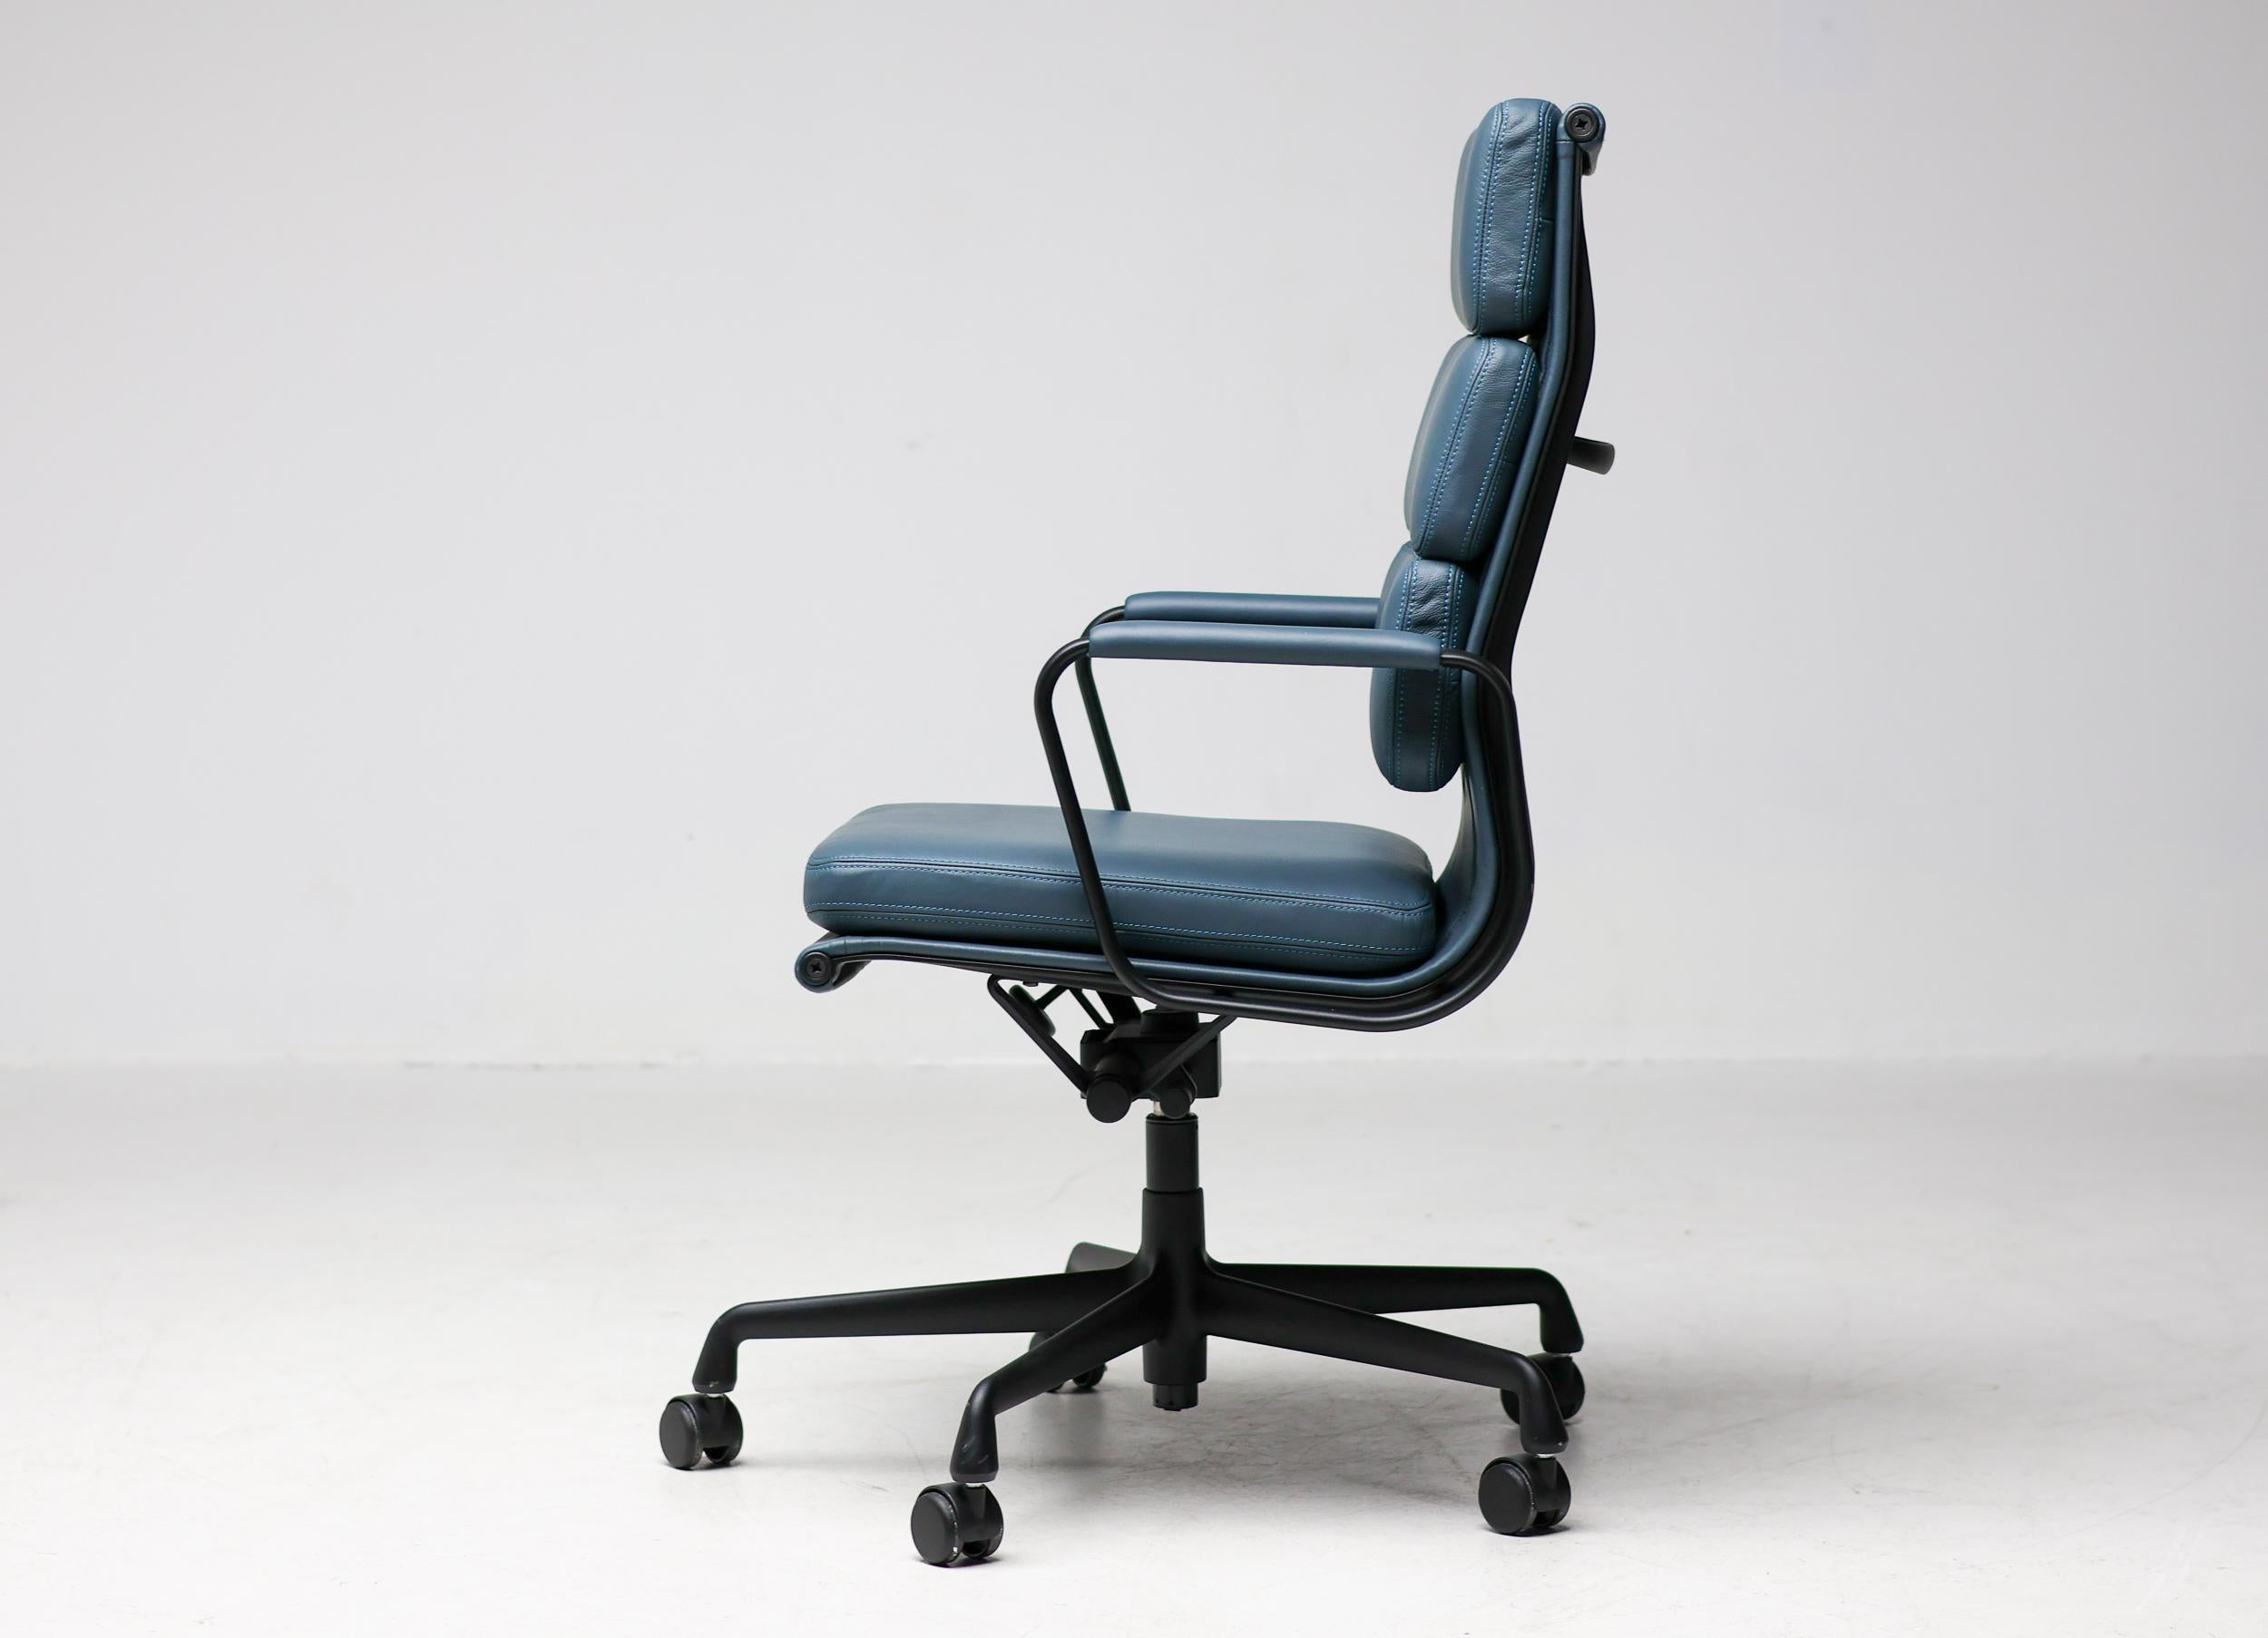 Die Modelle EA 217 und EA 219 sind die Bürodrehstühle der Soft Pad Group von Charles und Ray Eames. Durch ihre würdevolle Ausstrahlung eignen sie sich besonders für Verwaltungsbereiche. Der außergewöhnliche Komfort der Stühle ergibt sich aus dem